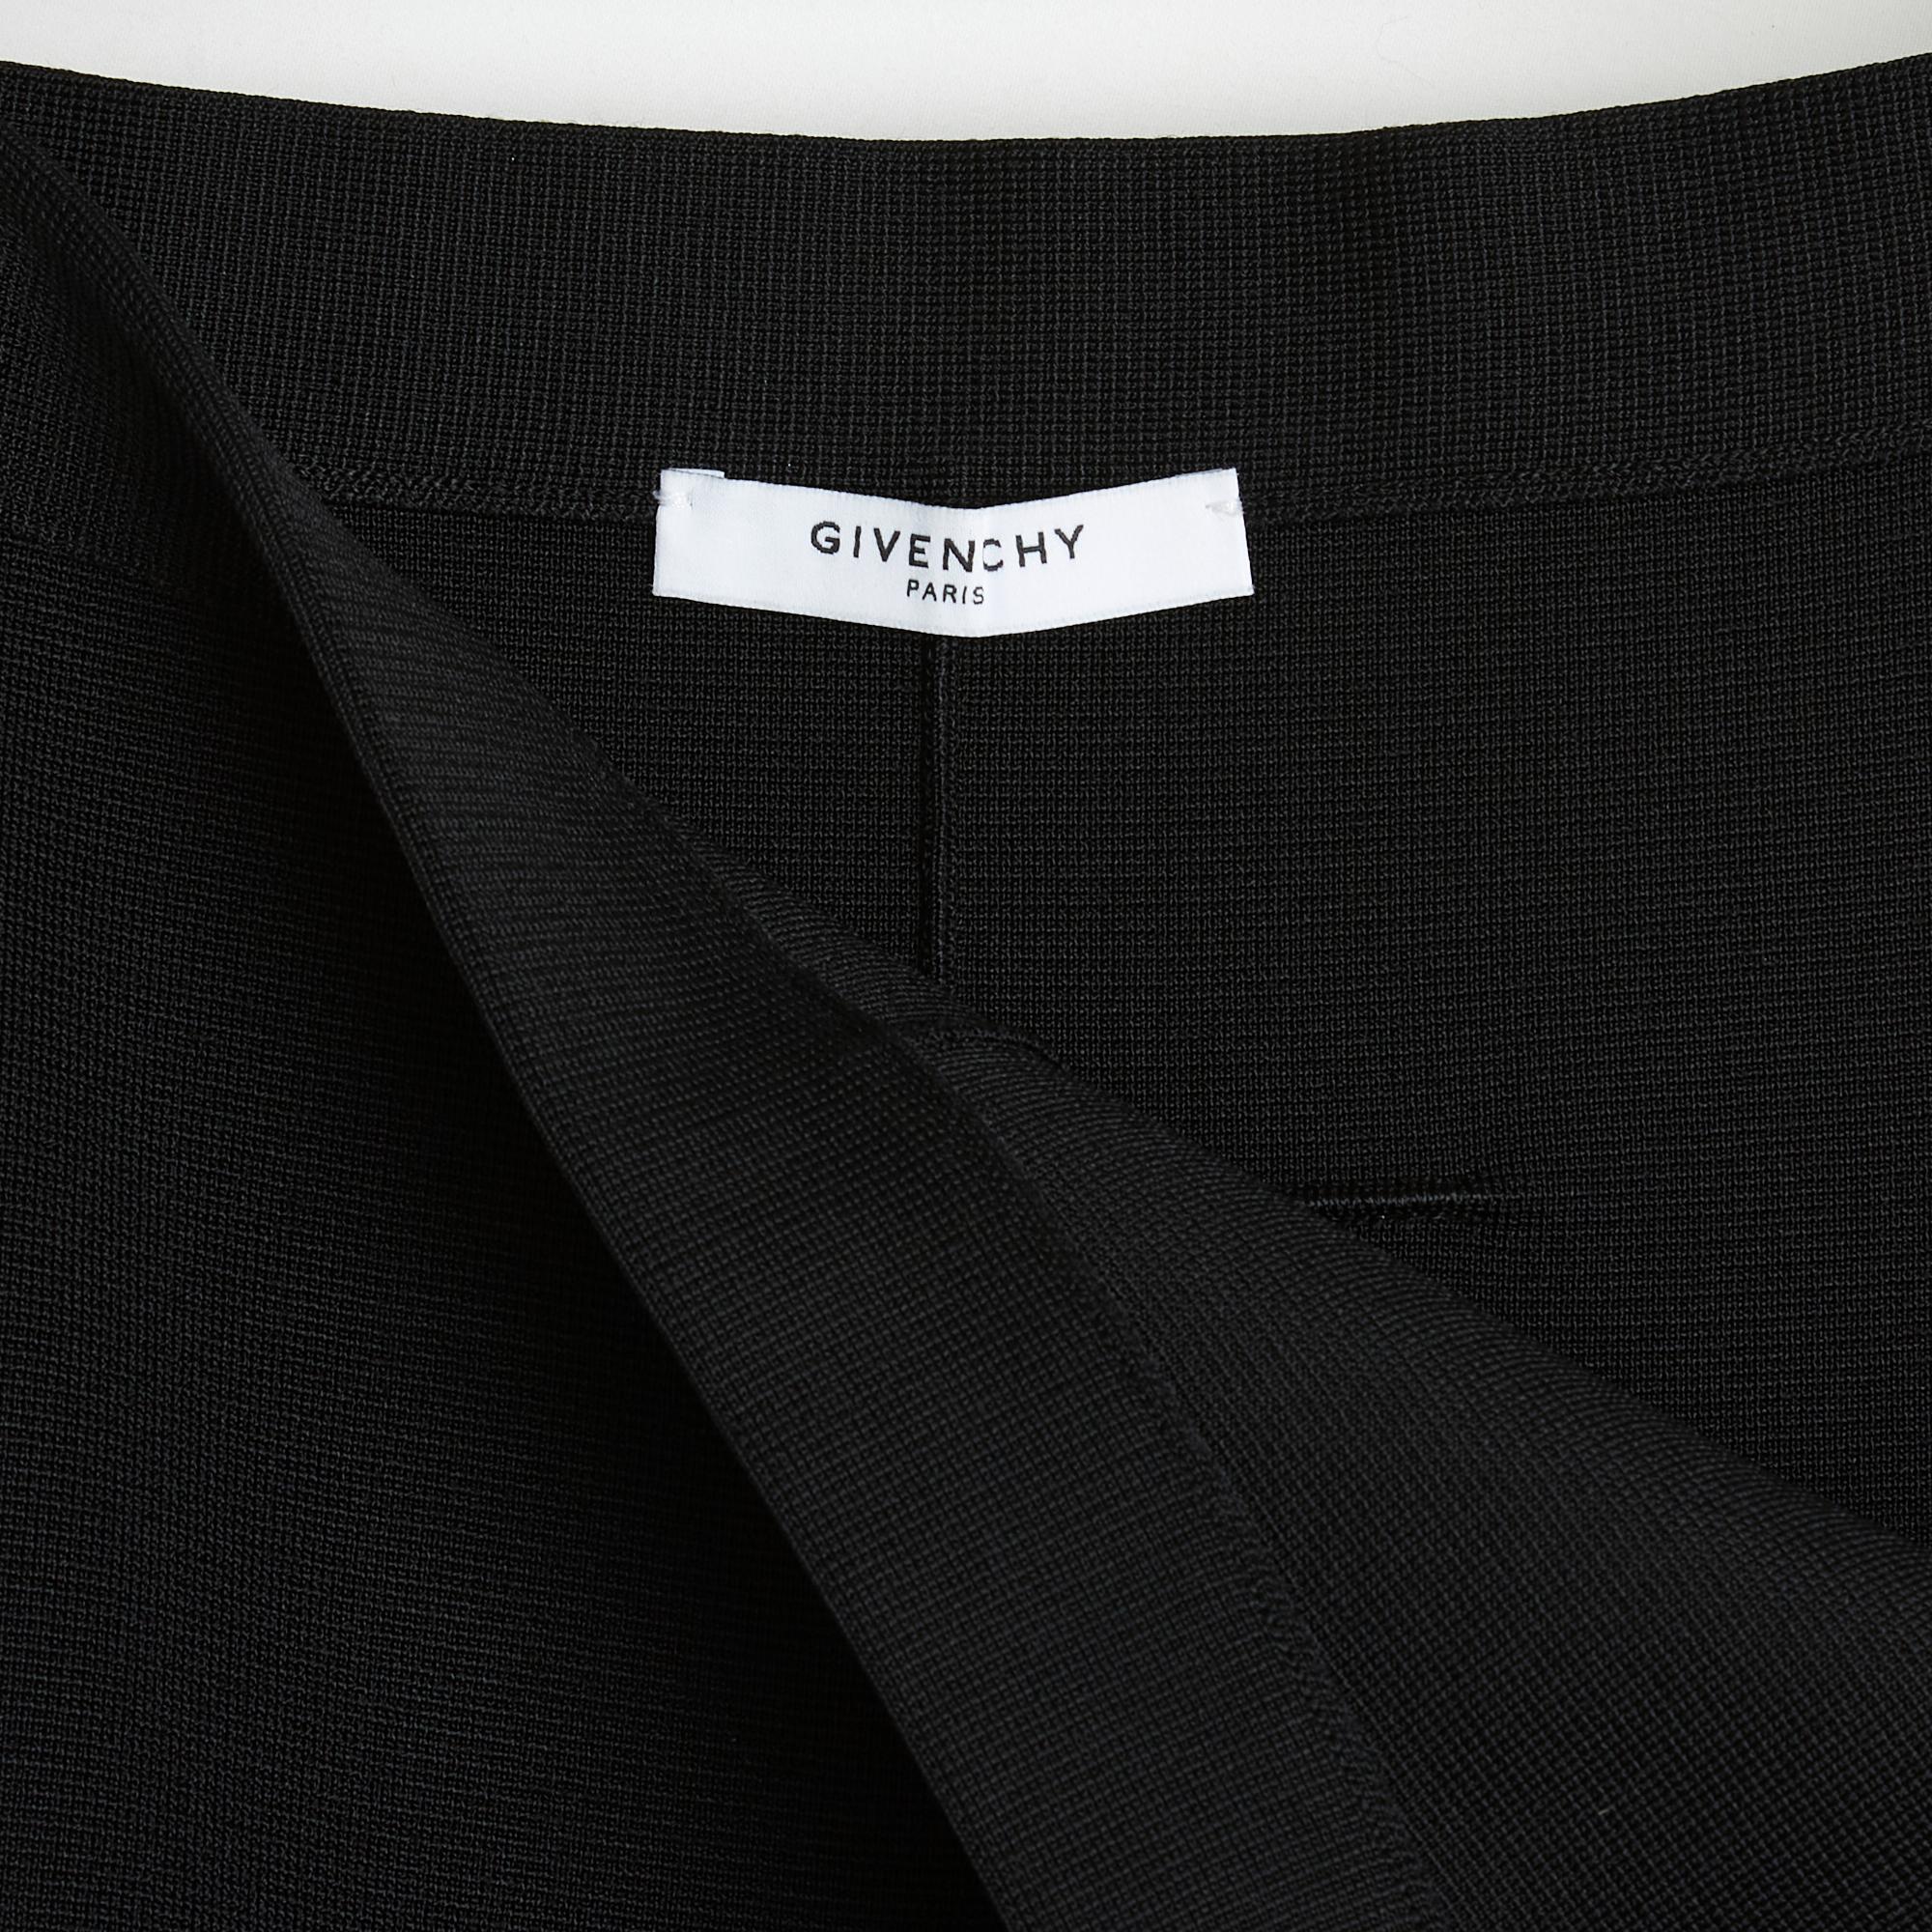 Jupe Givenchy par Riccardo Tisci, droite en épaisse maille de viscose et laine noires, longue fente sur le devant, fermeture zippée et crochet sur le côté. Plus d'étiquette de composition ni de taille mais les mensurations indiquent un 36FR : taille